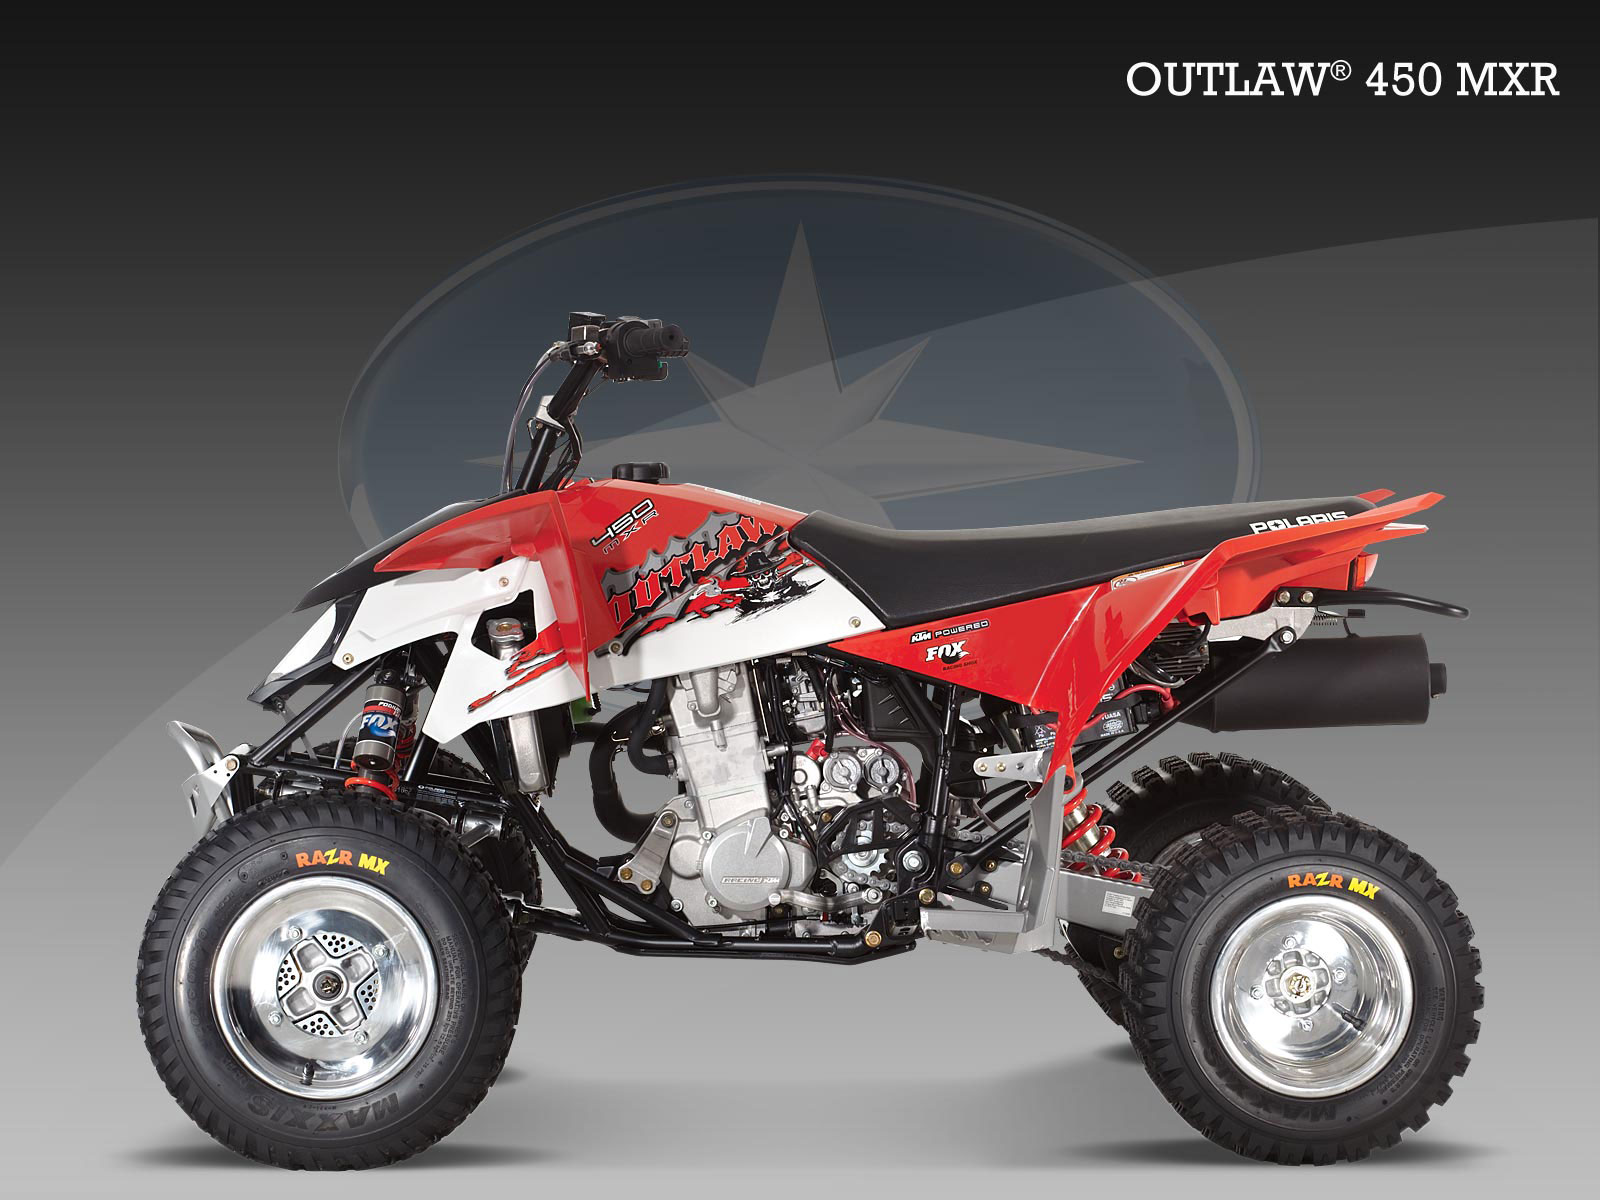 Details about   3 Pcs 1st Oil Filter For Polaris ATV 450 Outlaw MXR S 2008 2009 AU stock 